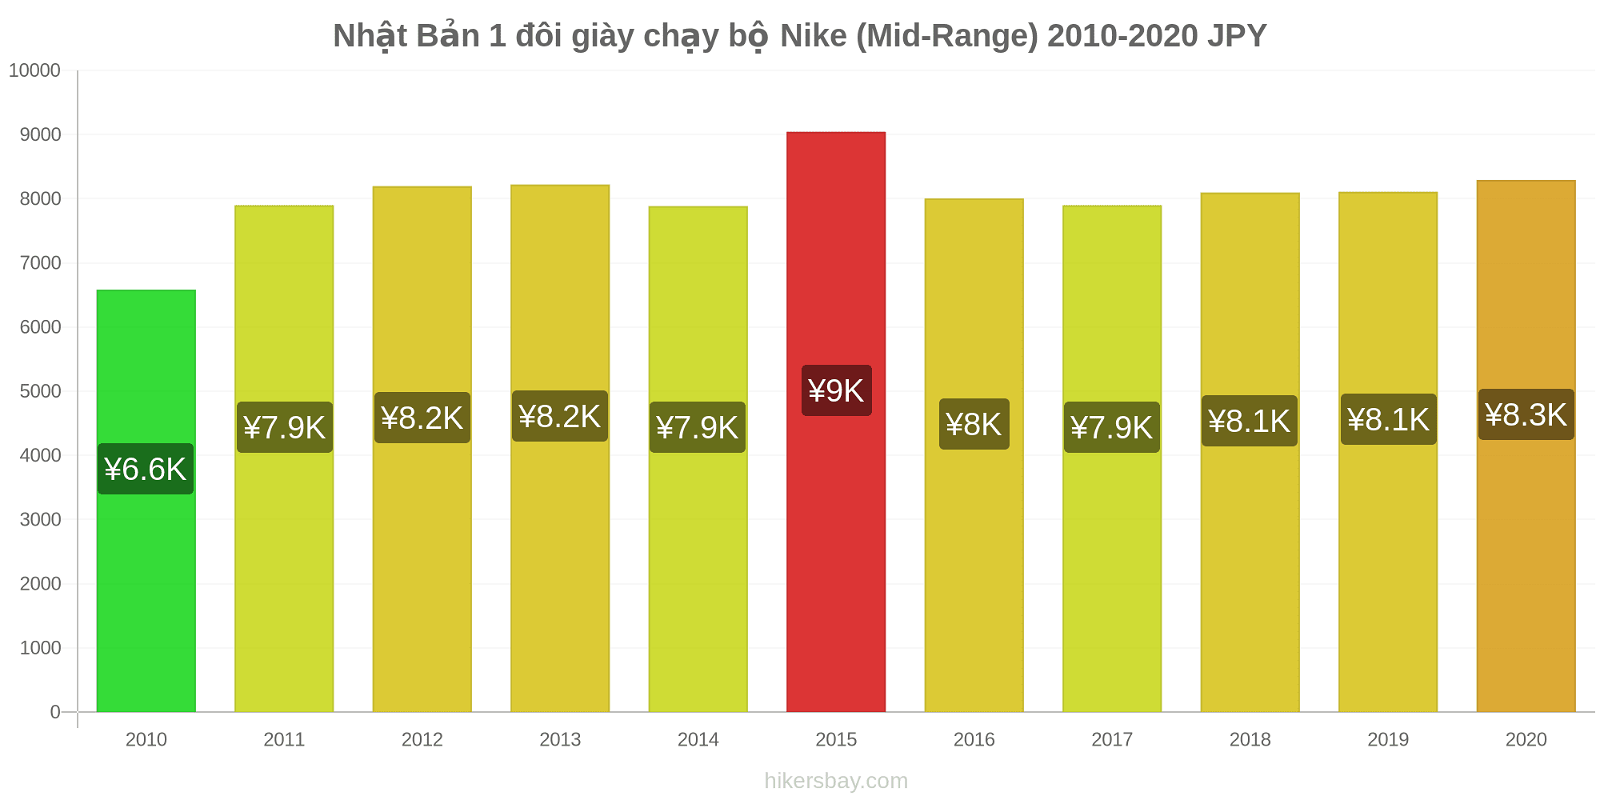 Nhật Bản thay đổi giá 1 đôi giày chạy bộ Nike (Mid-Range) hikersbay.com